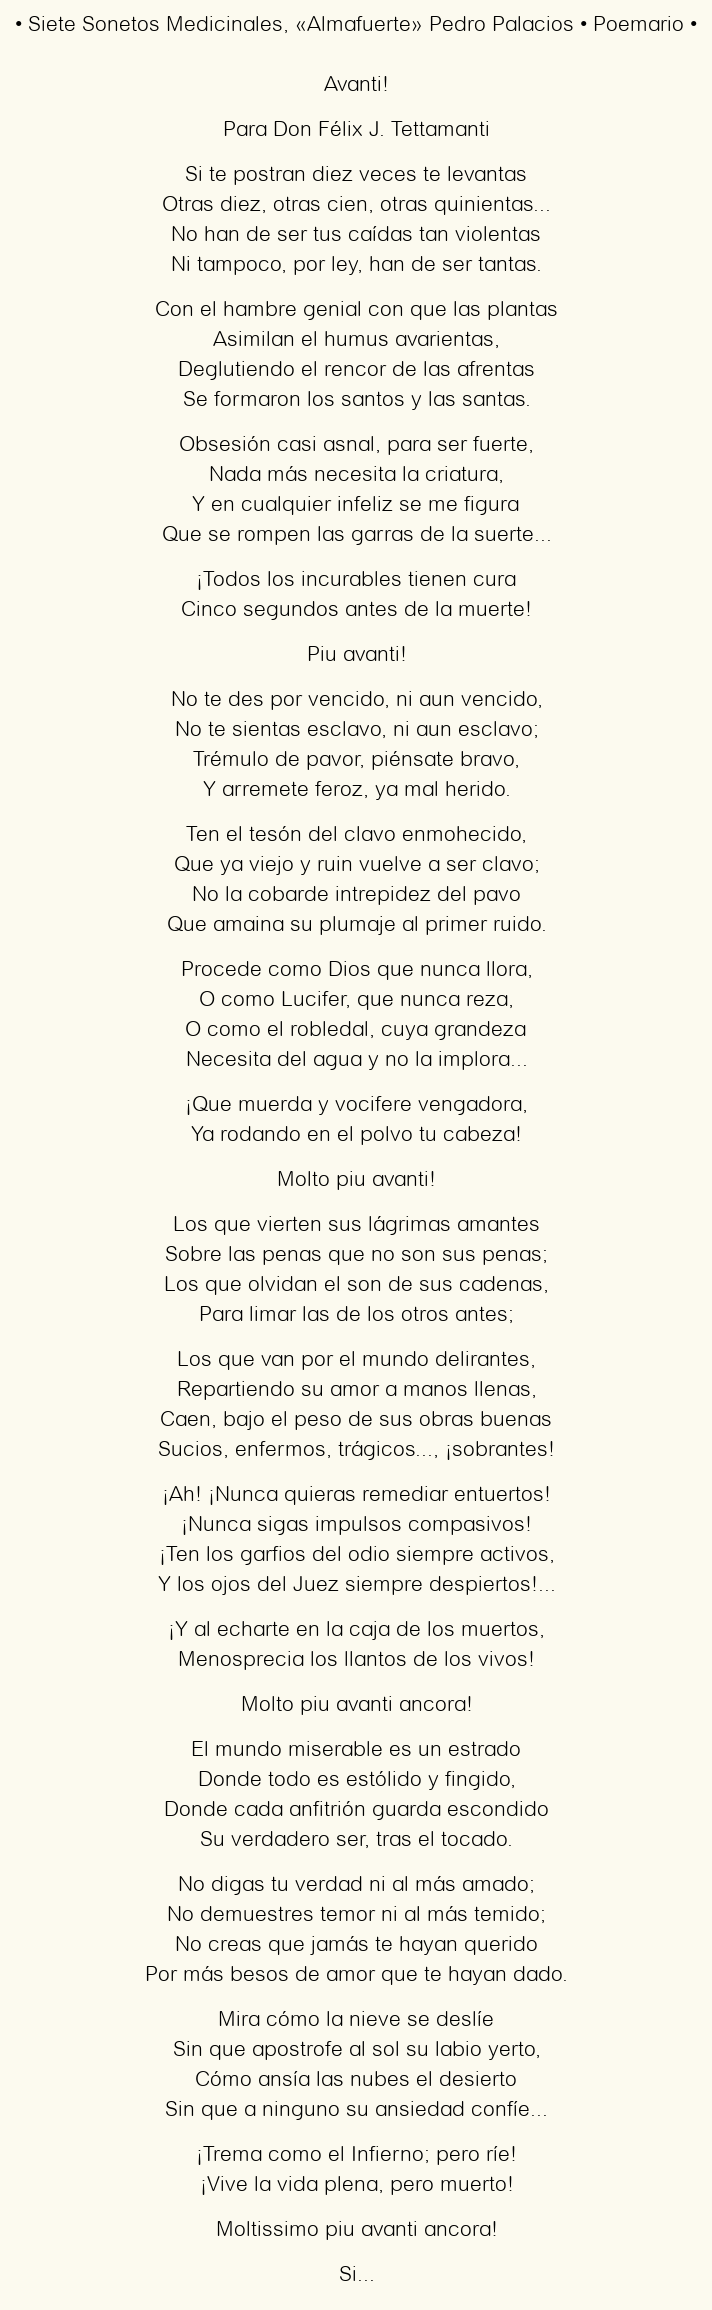 Imagen con el poema Siete Sonetos Medicinales, por «Almafuerte» Pedro Palacios